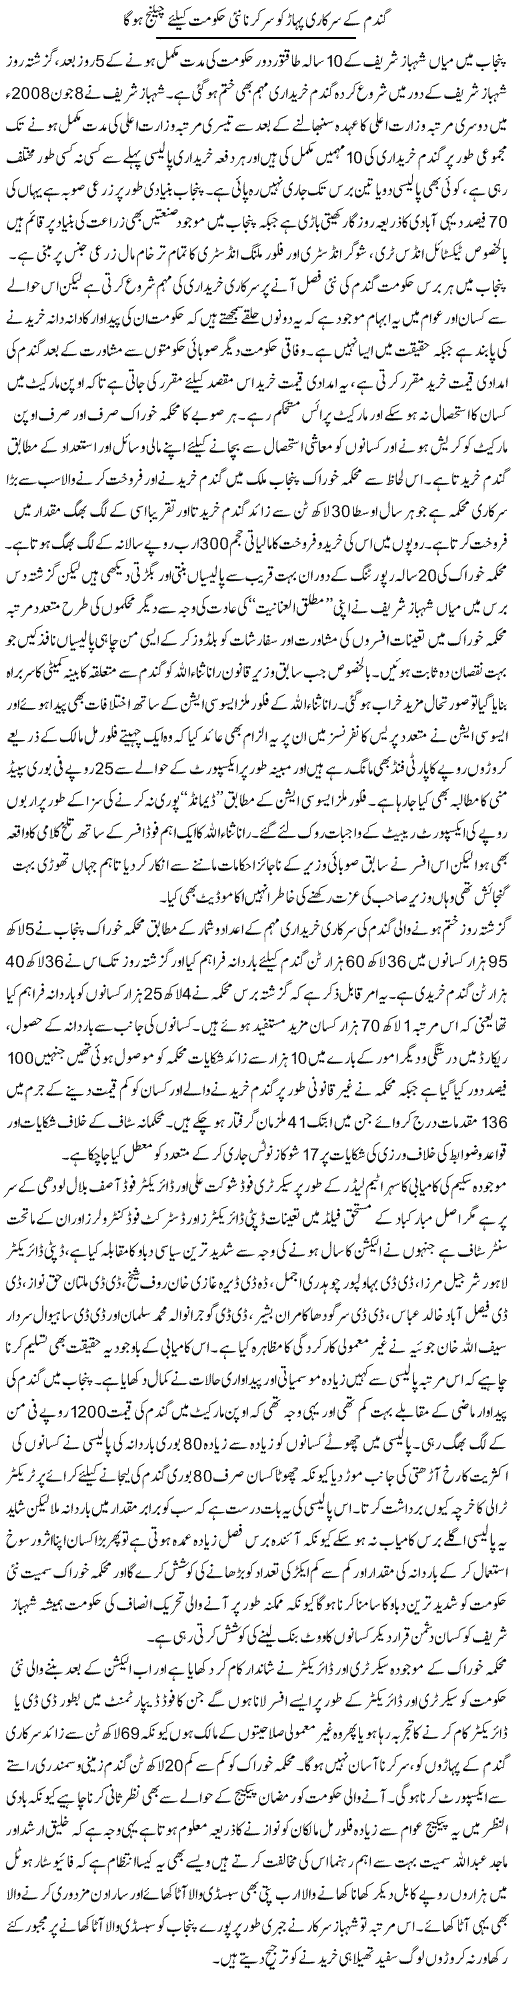 Gandum Ke Sarkari Pahar Ko Sar Karna Nai Hukumat Ke Liye Challenge Hoga | Rizwan Asif | Daily Urdu Columns